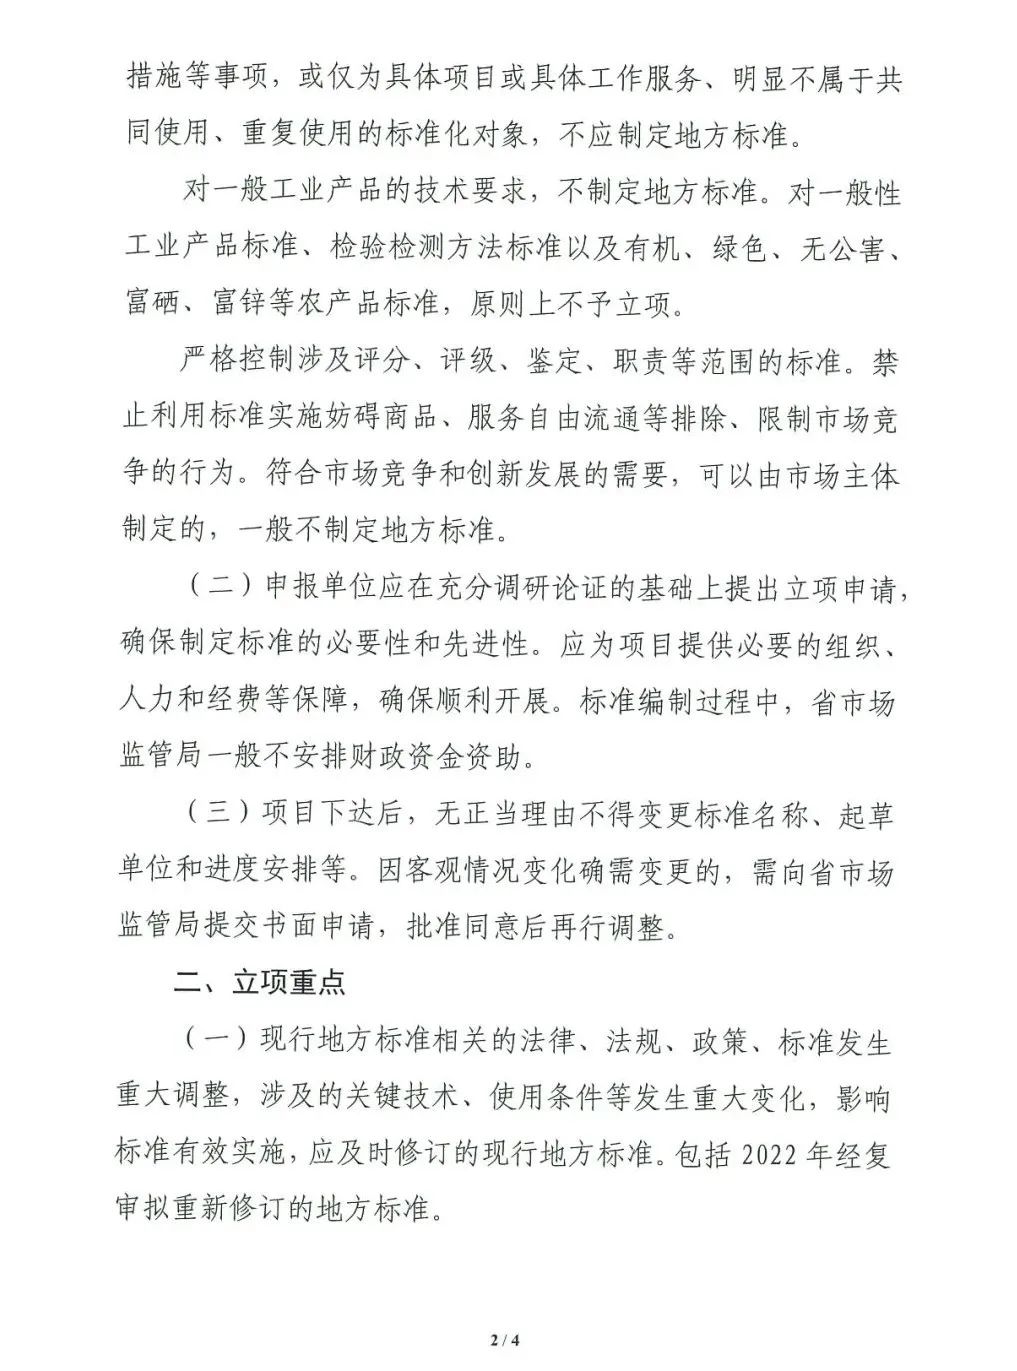 广东省安全防范报警系统标准化技术委员会关于组织申报2022年第一批地方标准制修订计划项目的通知